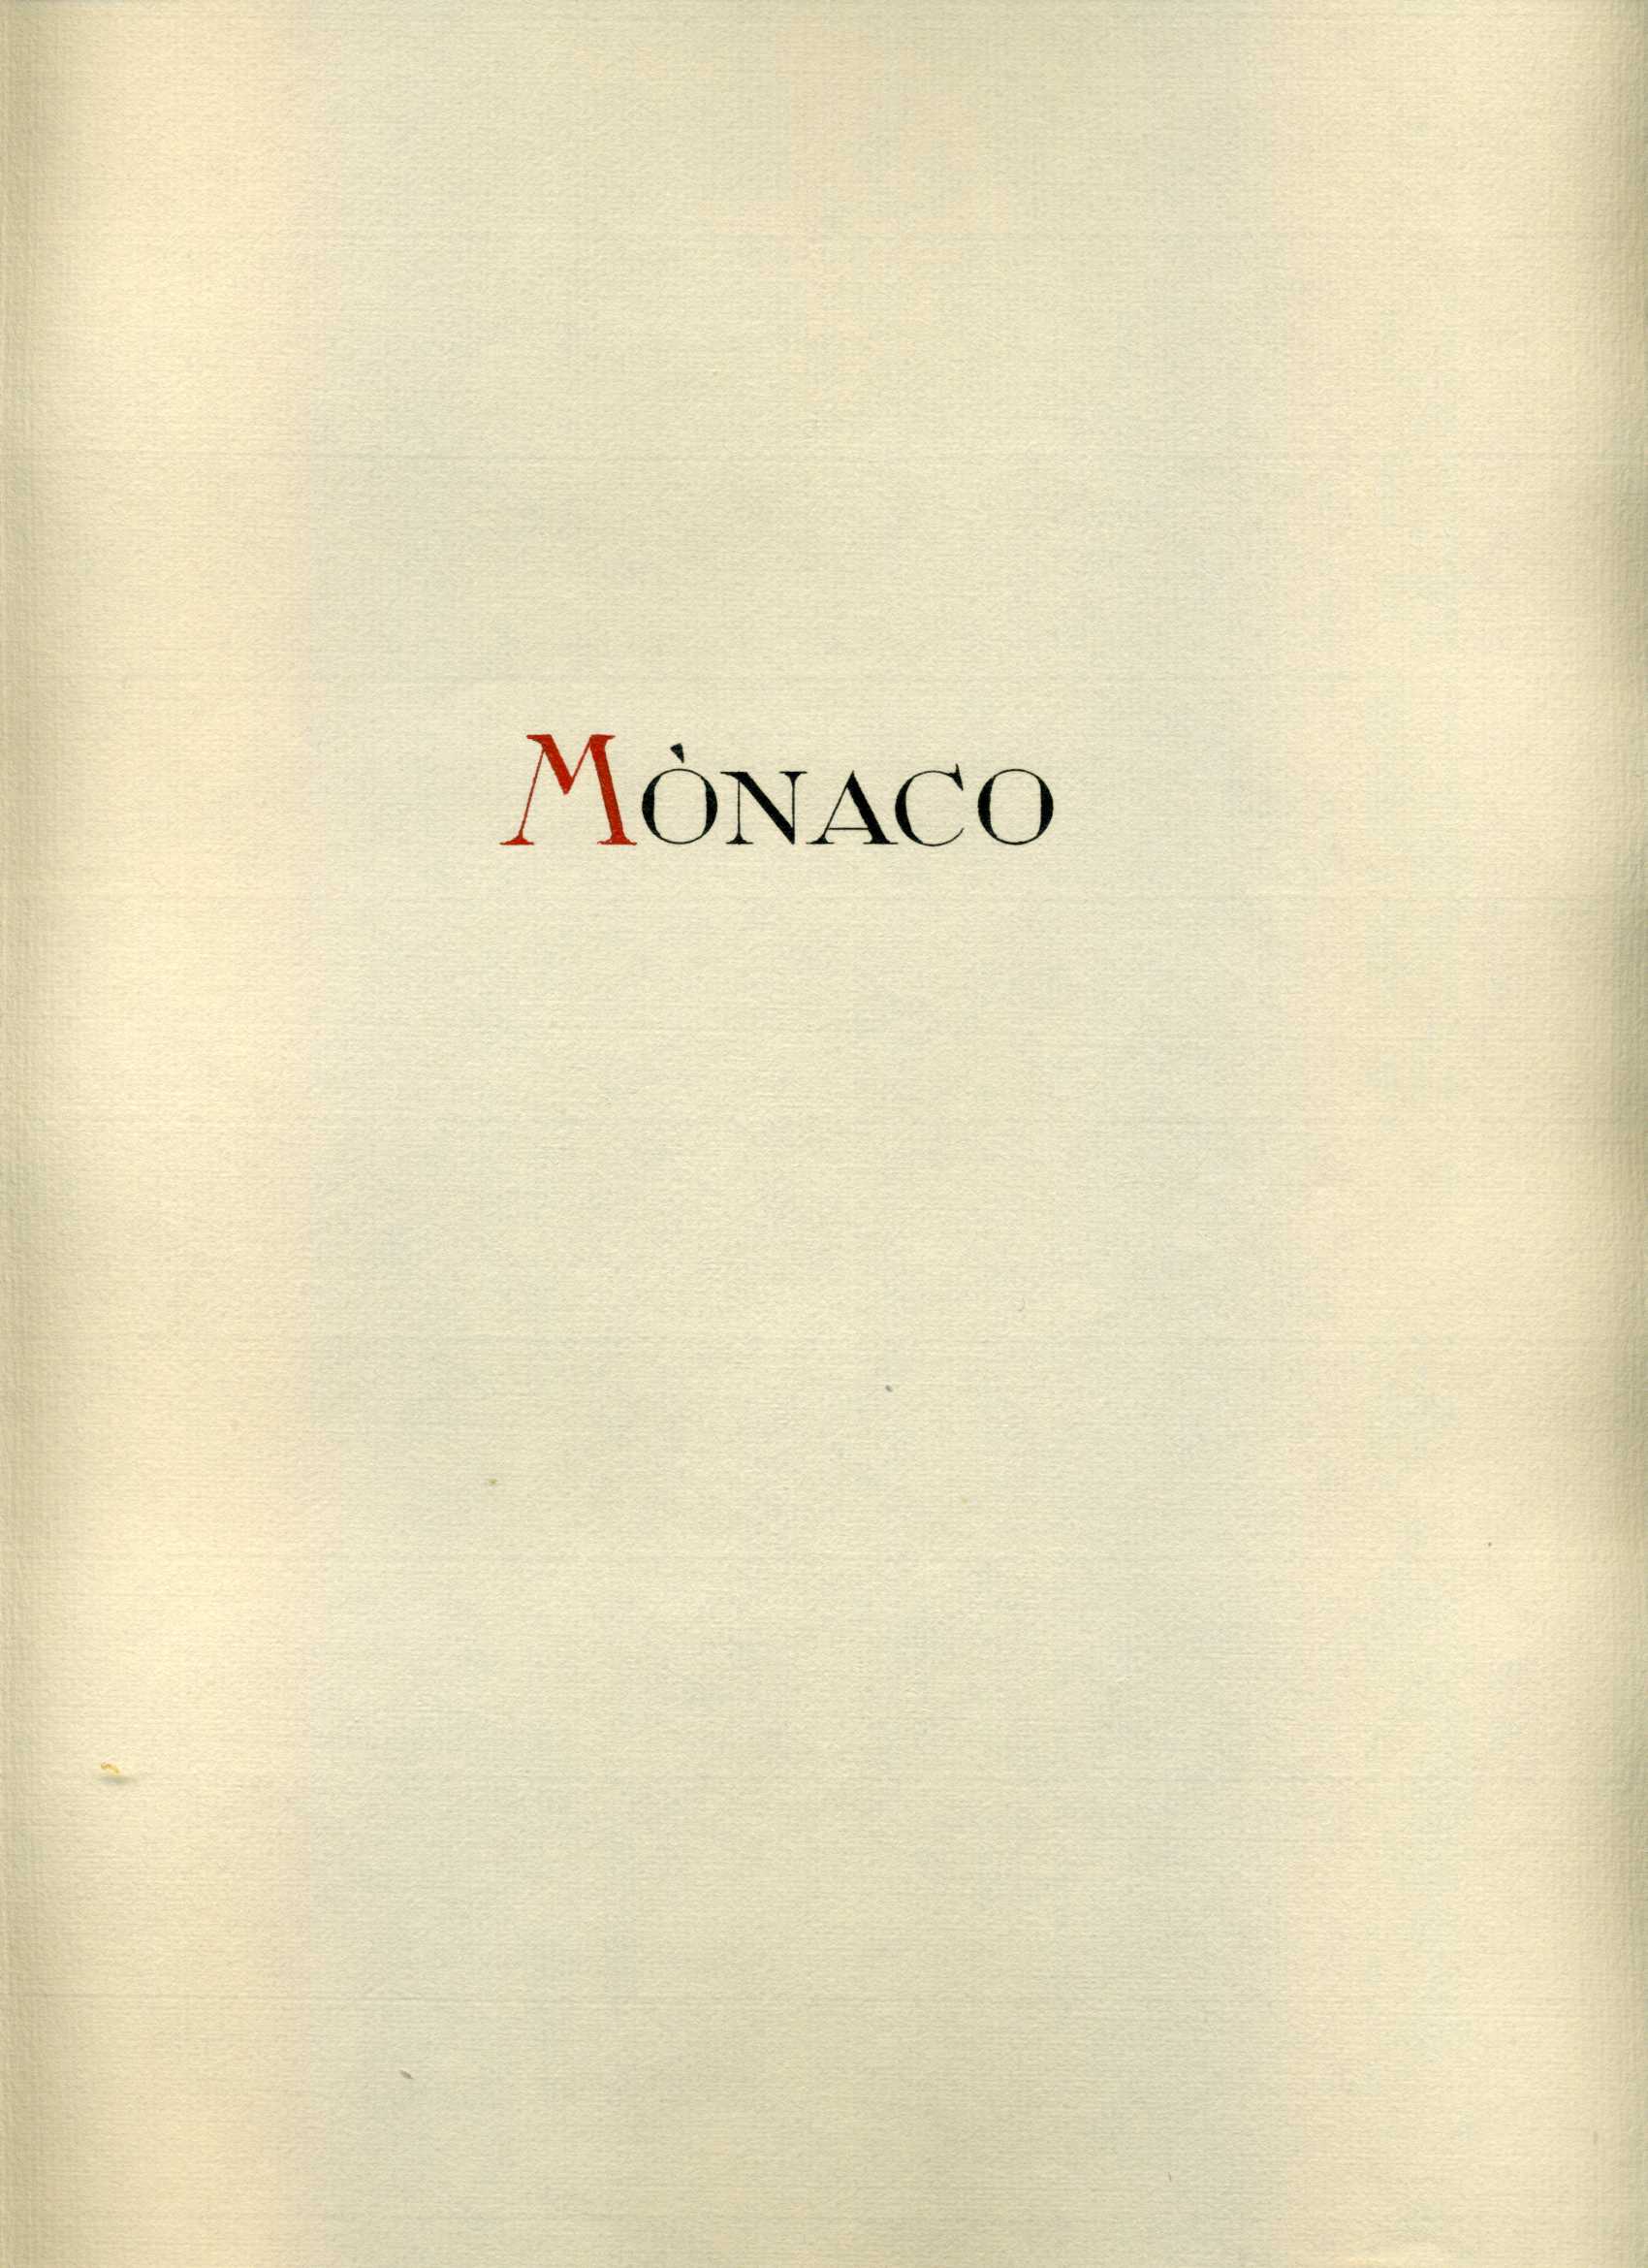 Foto COLECCIÓN COLLECTION MÓNACO MONACO 1885 - 1928 YVERT 1.802 € foto 424339